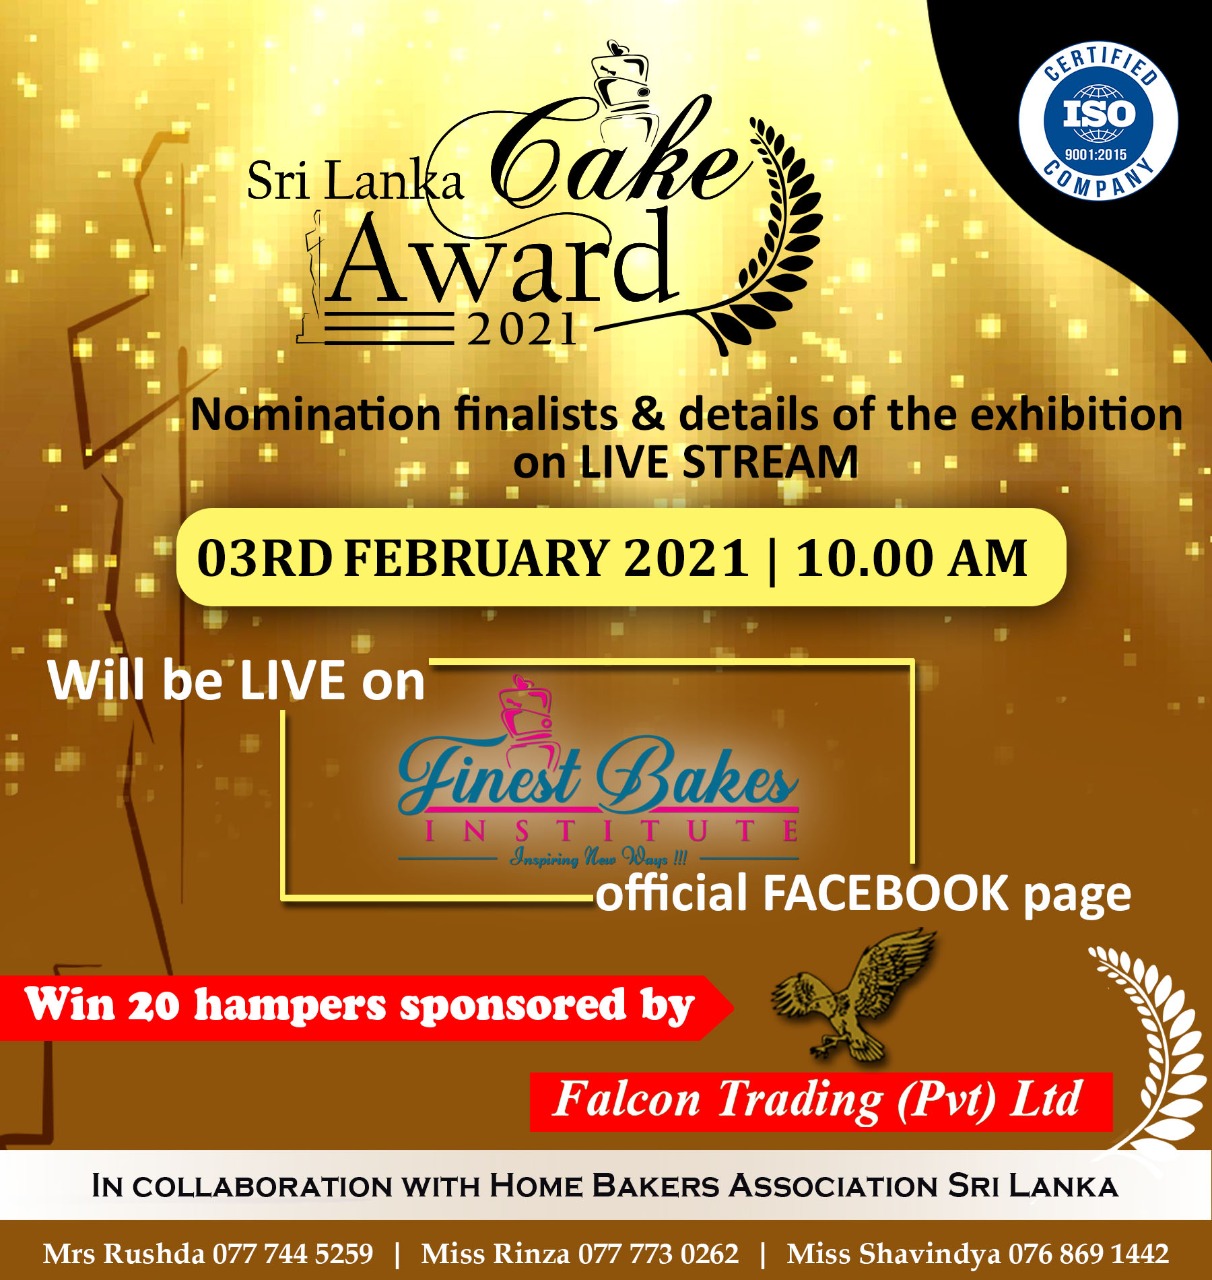 Sri Lanka Cake Award 2021